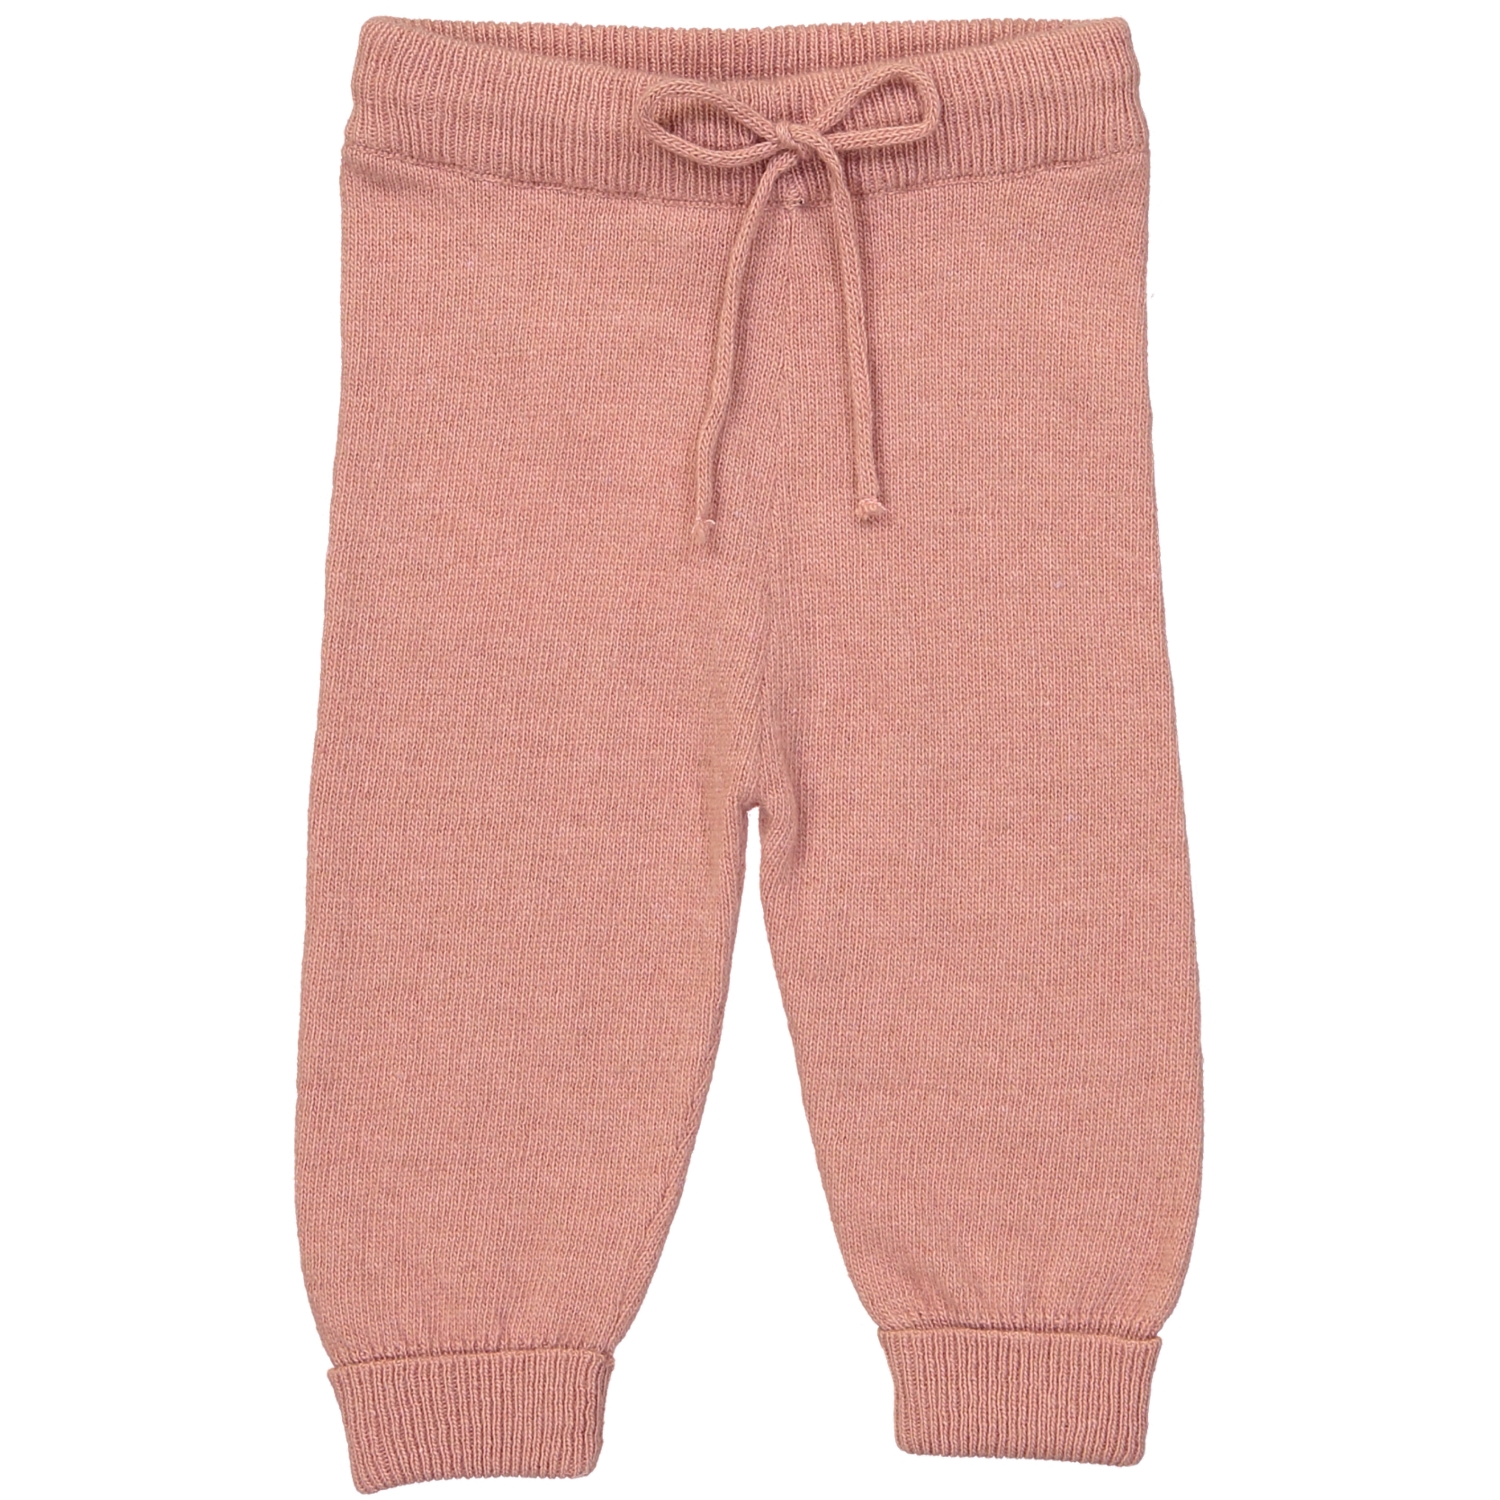 Pantalon bébé vieux rose en laine